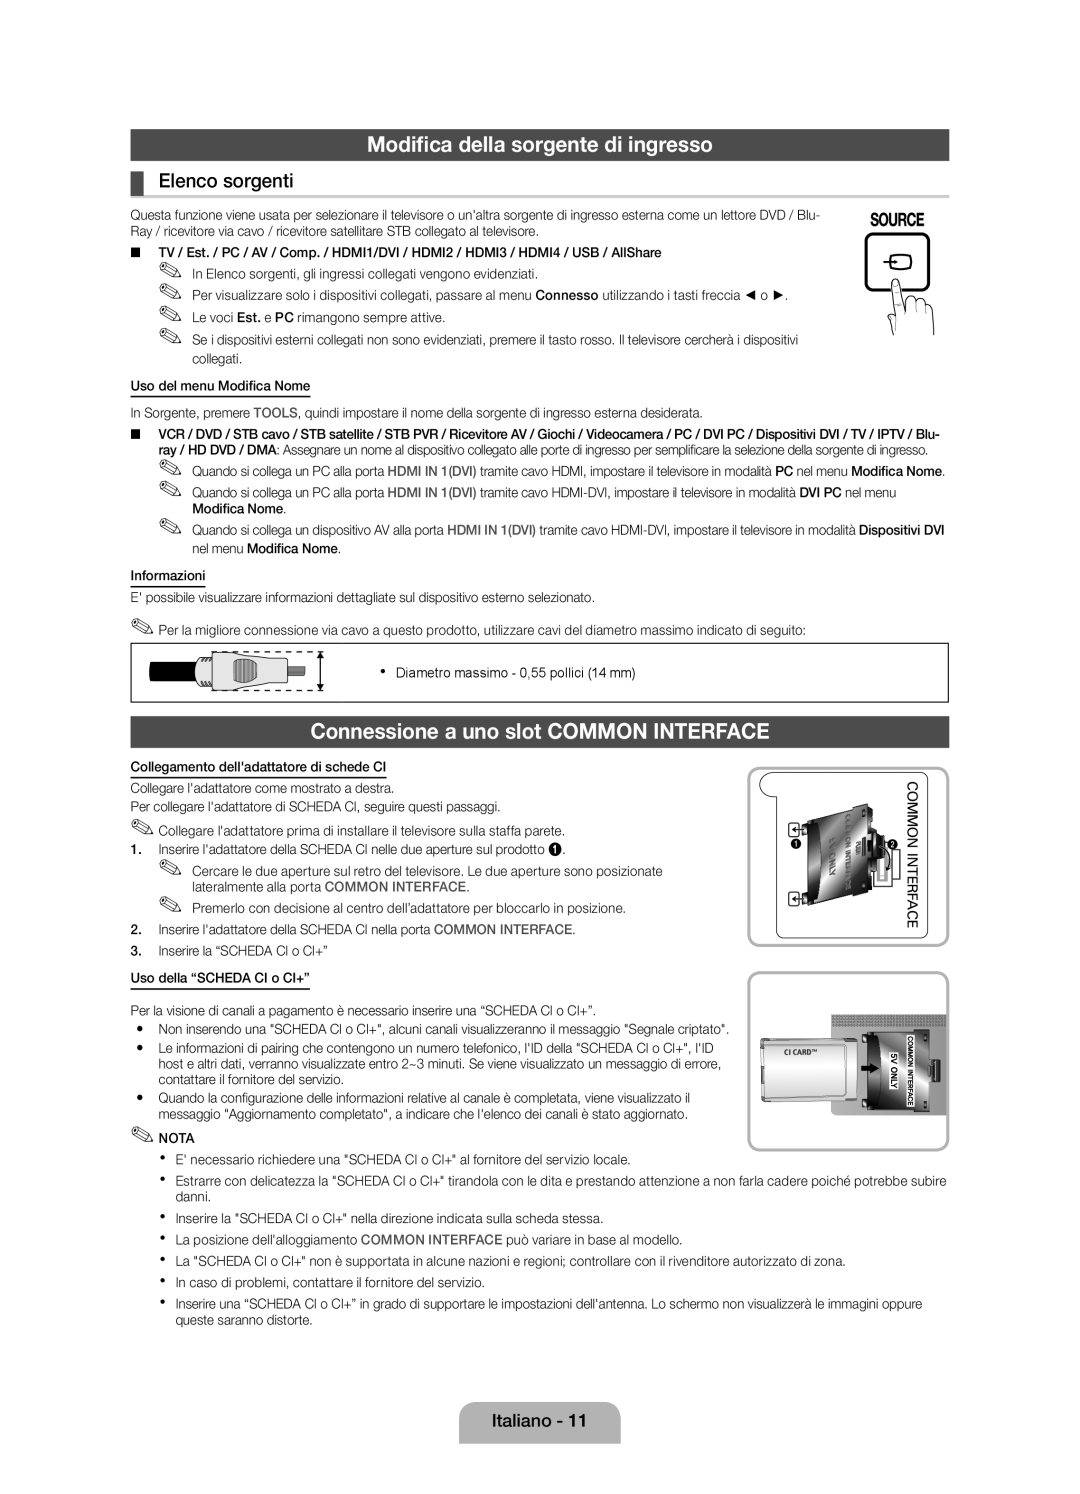 Samsung UE46D5000PWXXN manual Modifica della sorgente di ingresso, Connessione a uno slot COMMON INTERFACE, Elenco sorgenti 